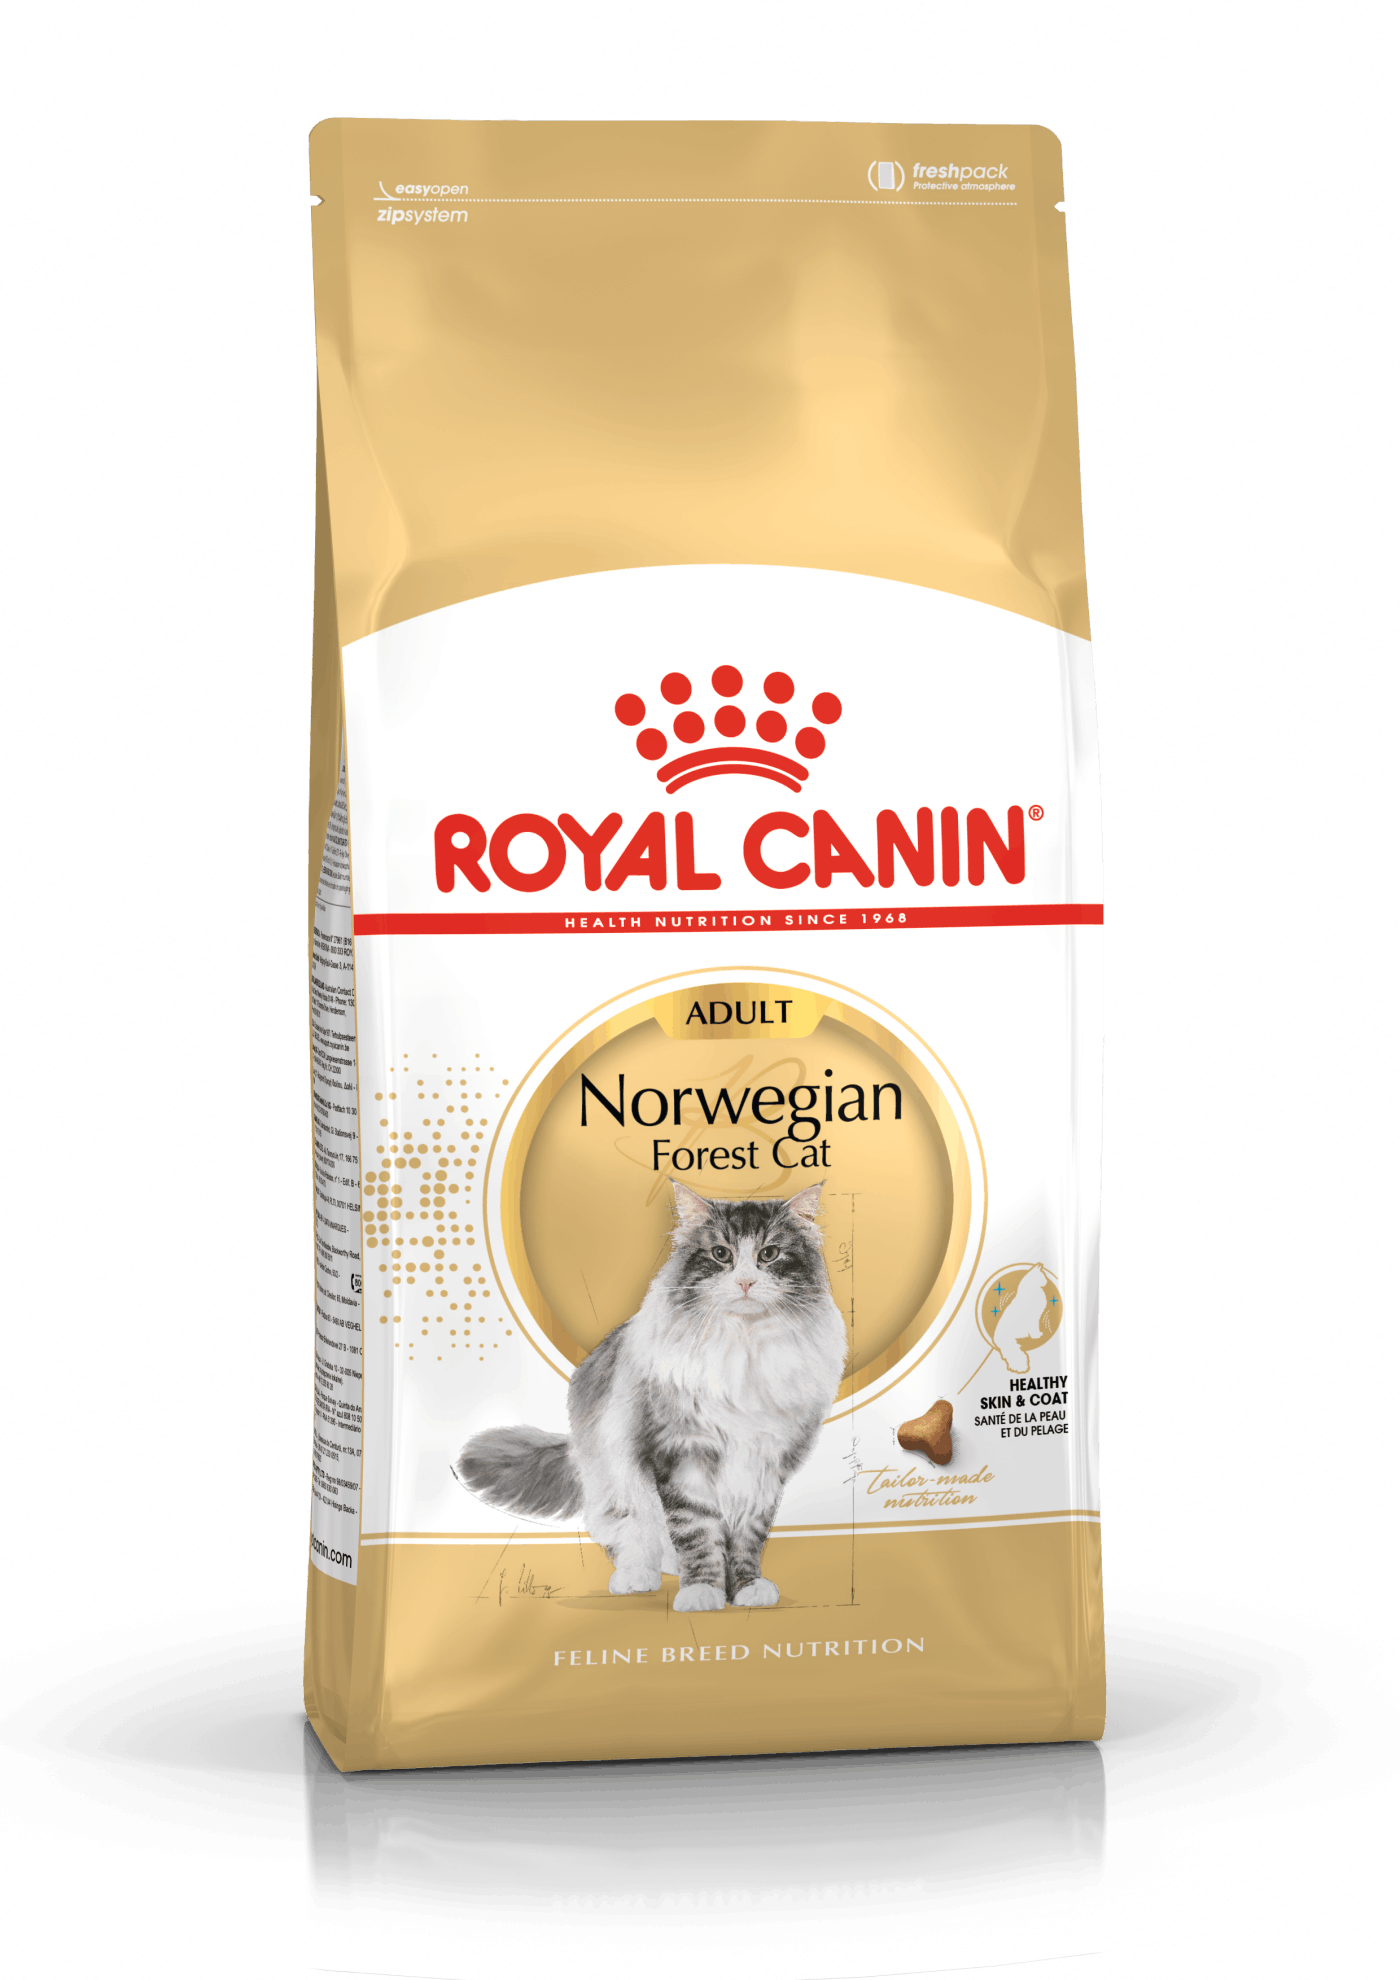 Royal Canin Adult Norwegian Forest Cat / Norsk skovkat. Til den voksne kat over 12 måneder